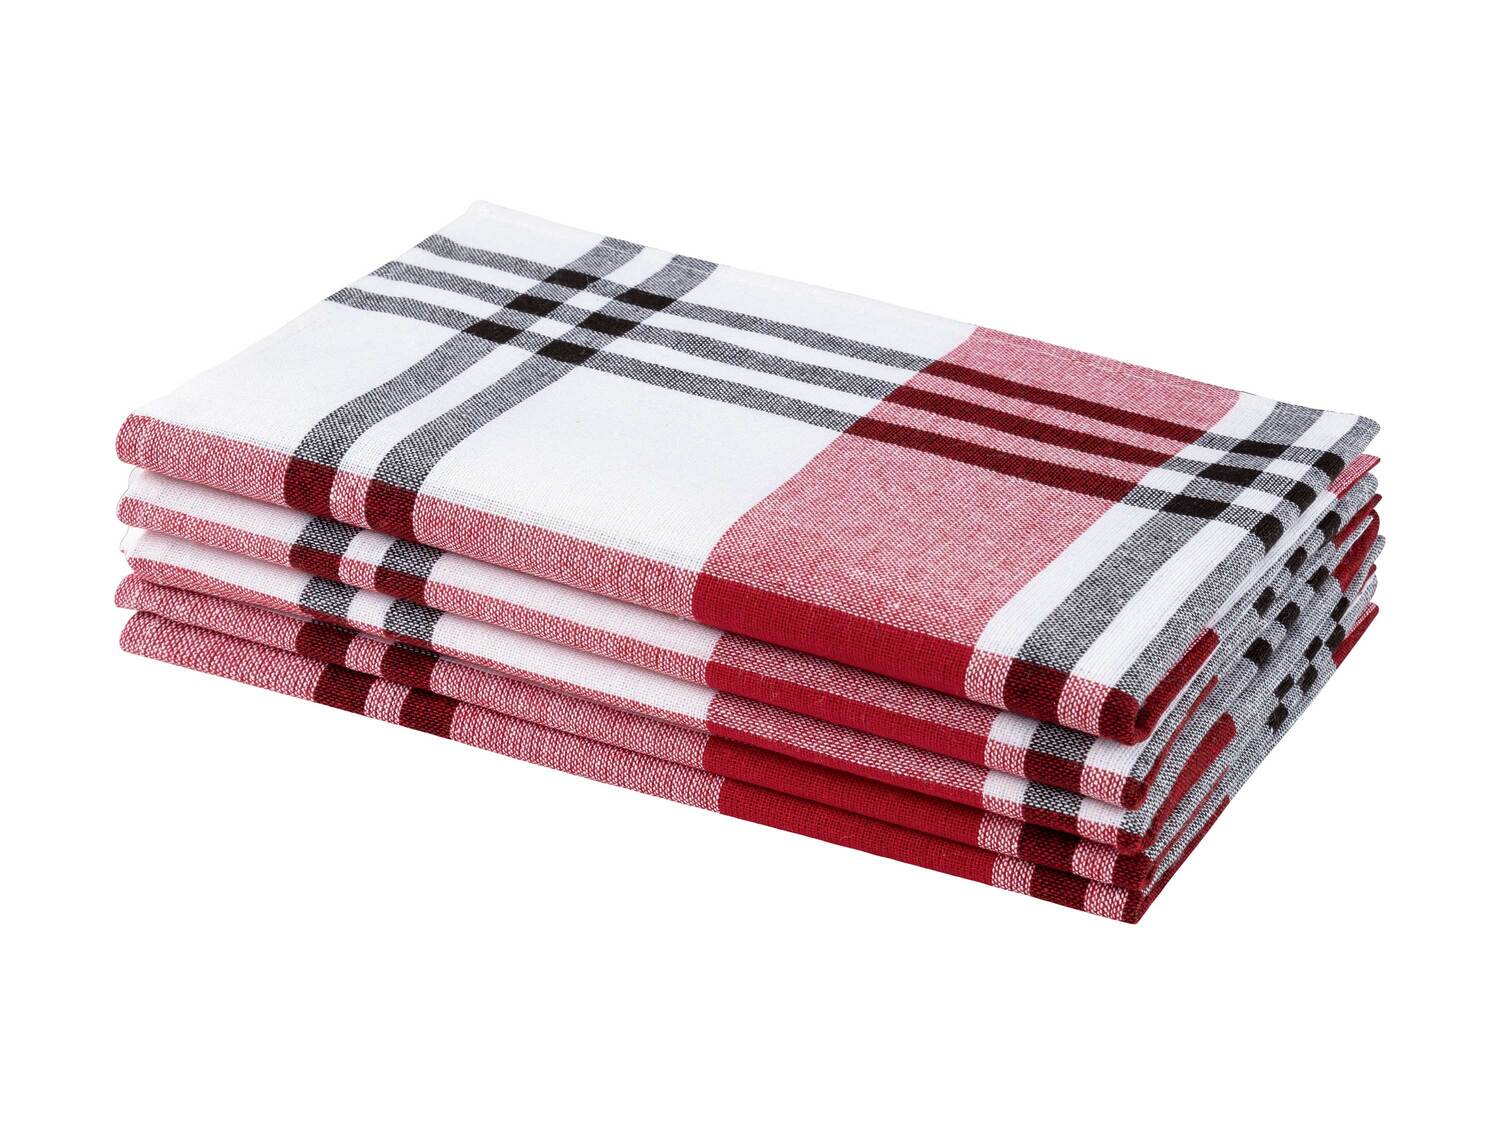 Zestaw 5 ręczników kuchennych* Meradiso, cena 4,99 PLN 
* Artykuł dostępny wyłącznie ...